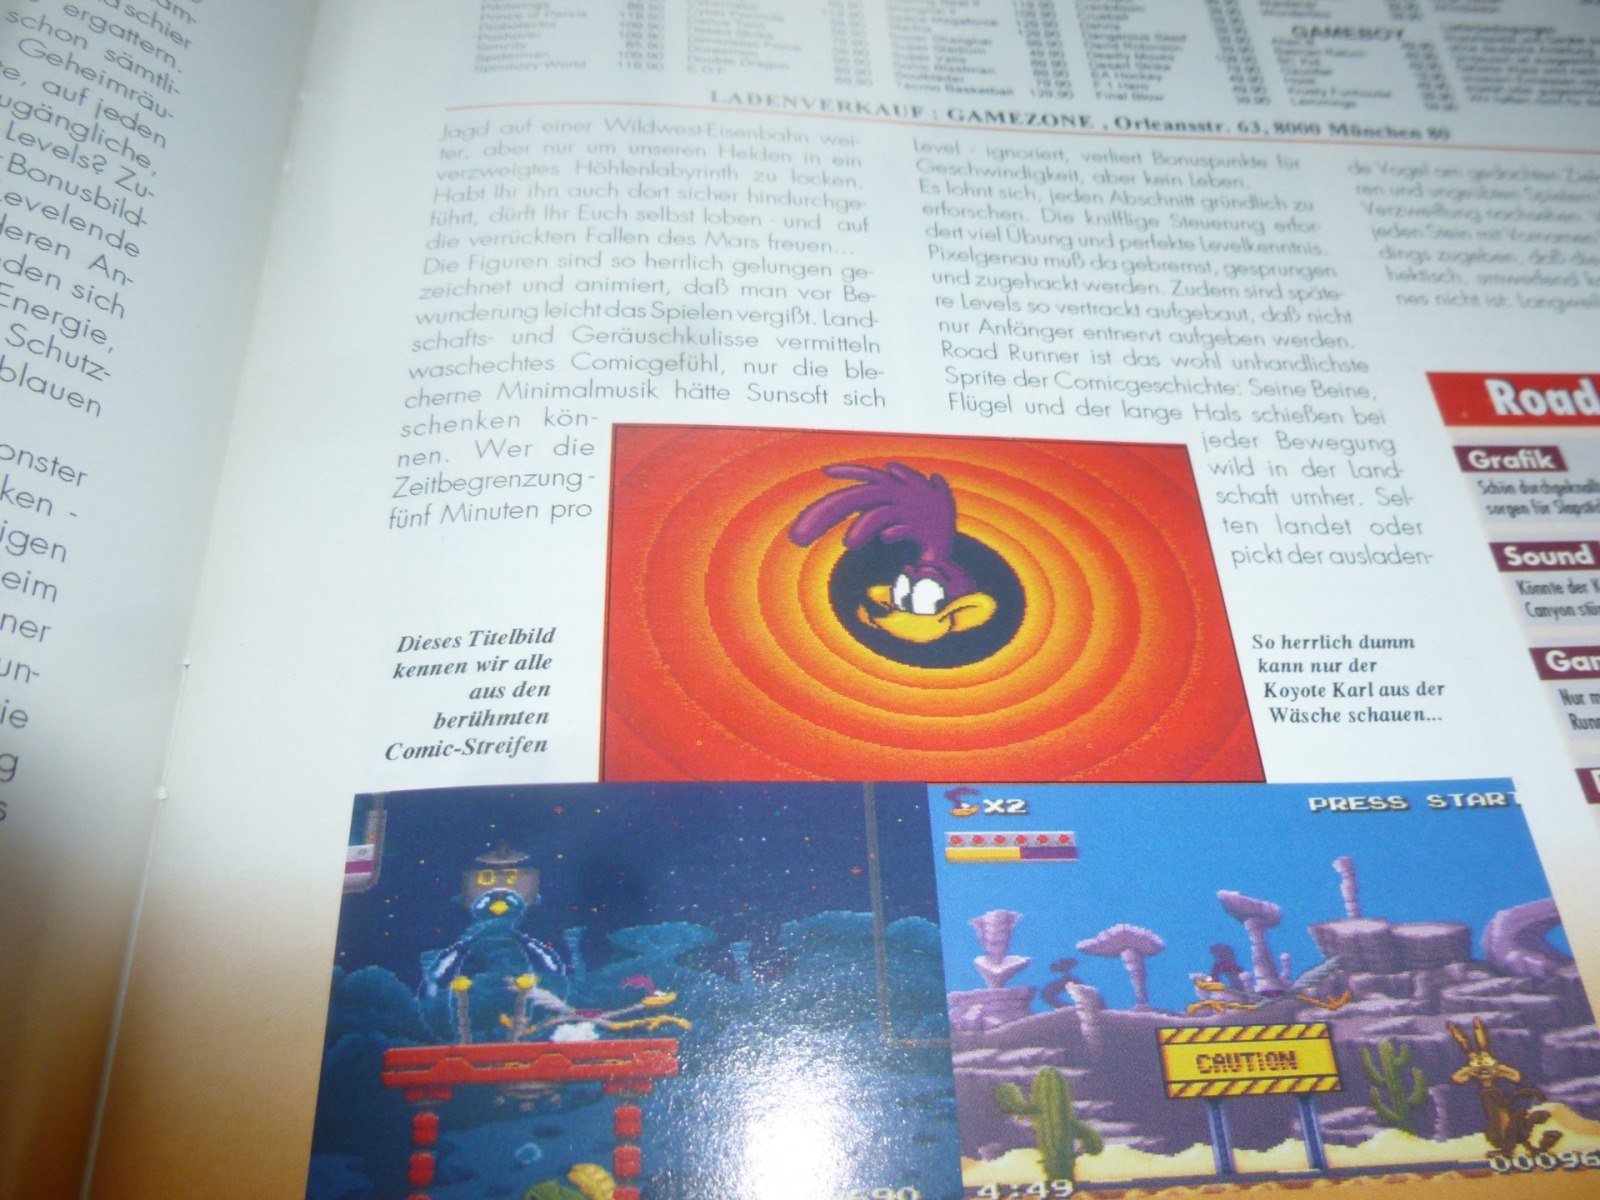 TOTAL Das unabhängige Magazin - 100 Nintendo - Ausgabe 7/93 1993 16